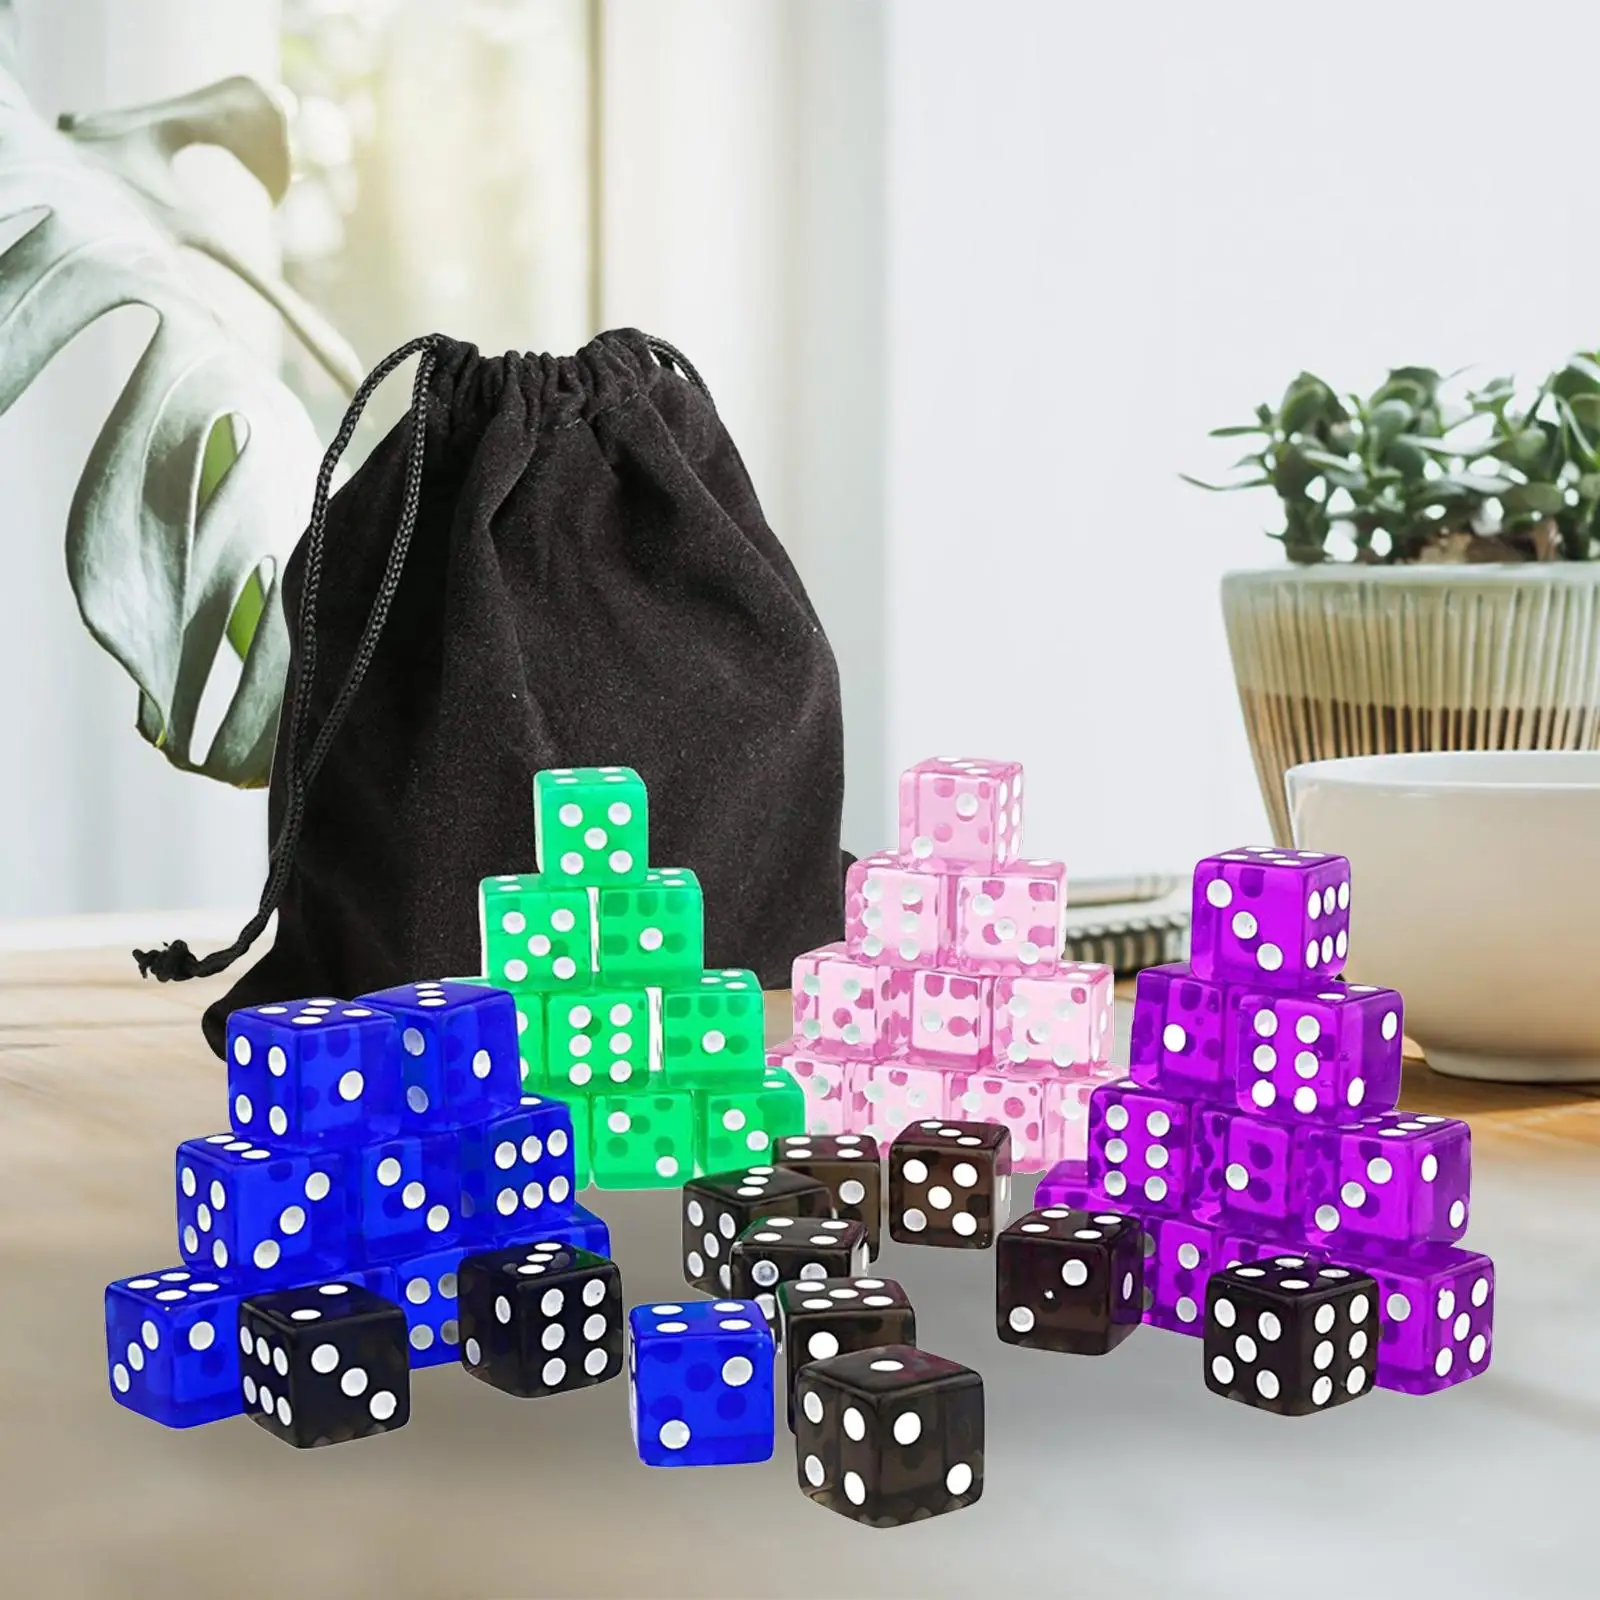 

6-сторонние кубики, Цветные Кубики, учебные пособия по математическому подсчету, искусственные предметы